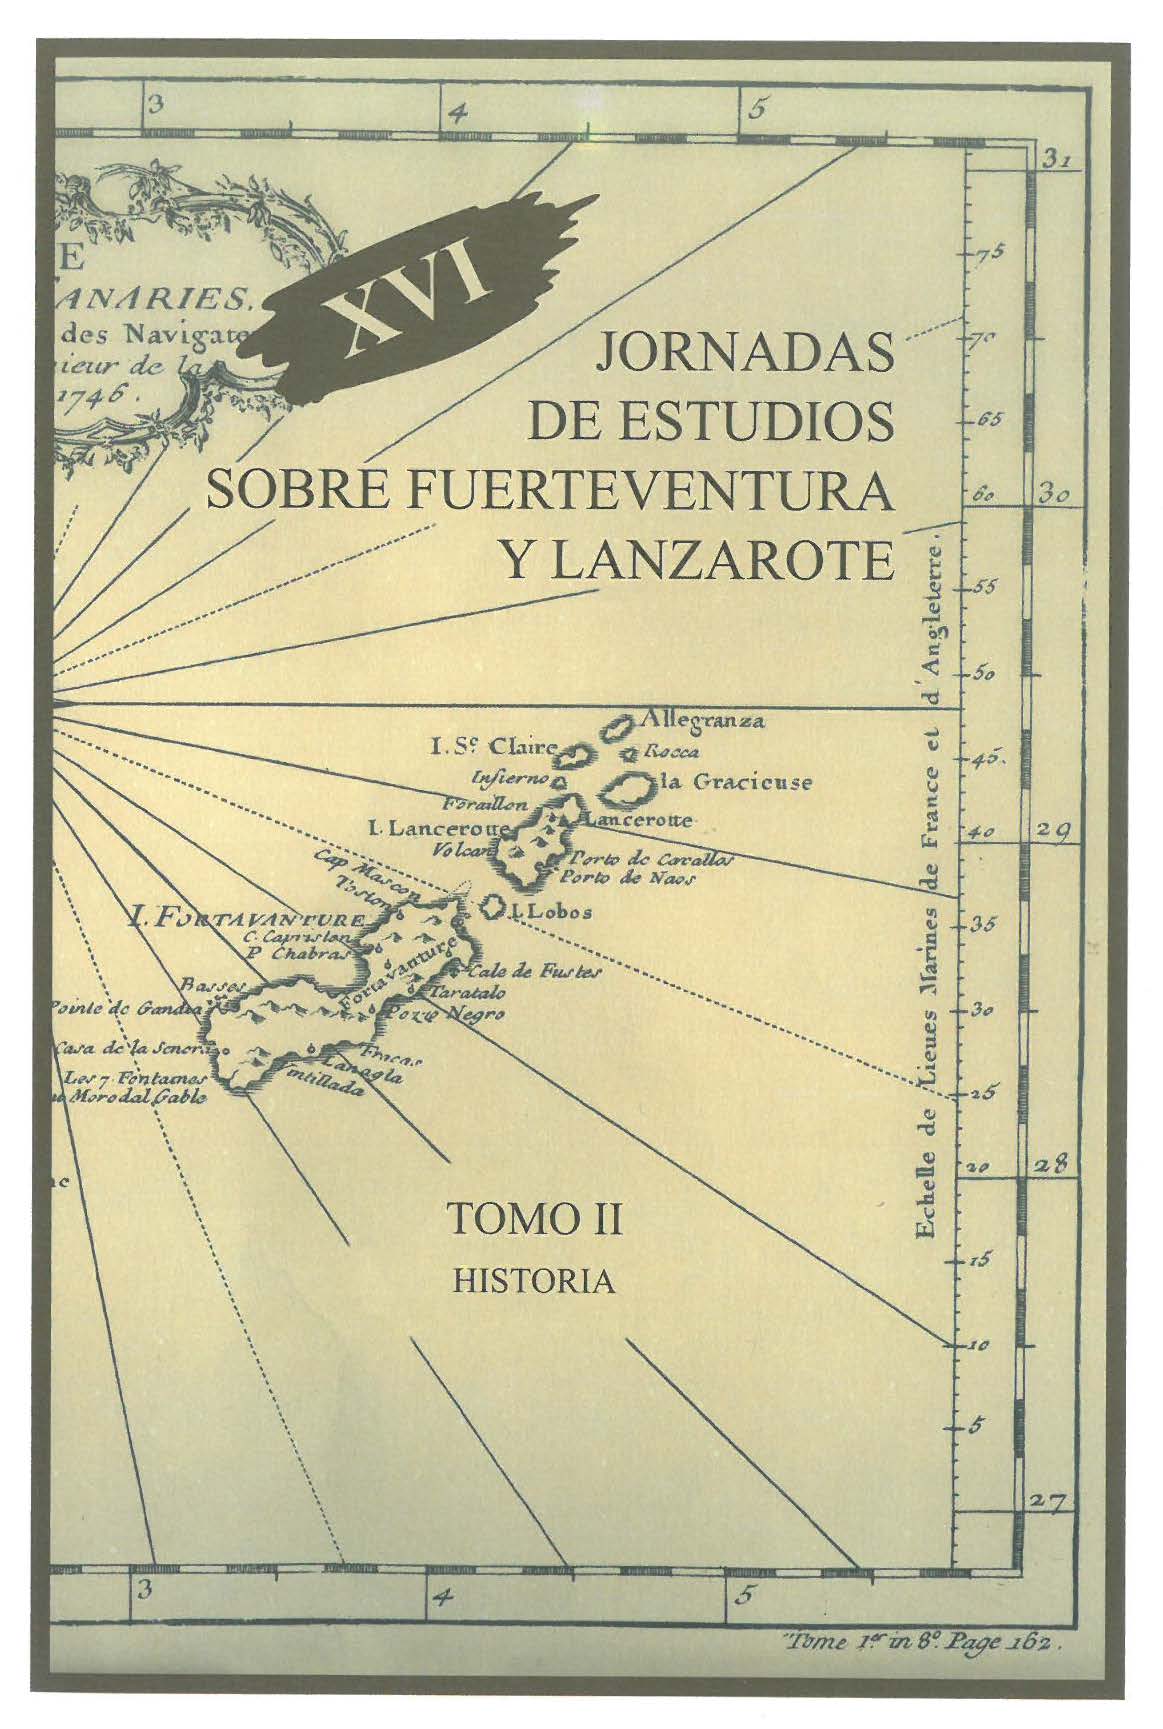 Movimiento portuario en el prototurismo temprano y el paso de La Pizarro por canarias orientales